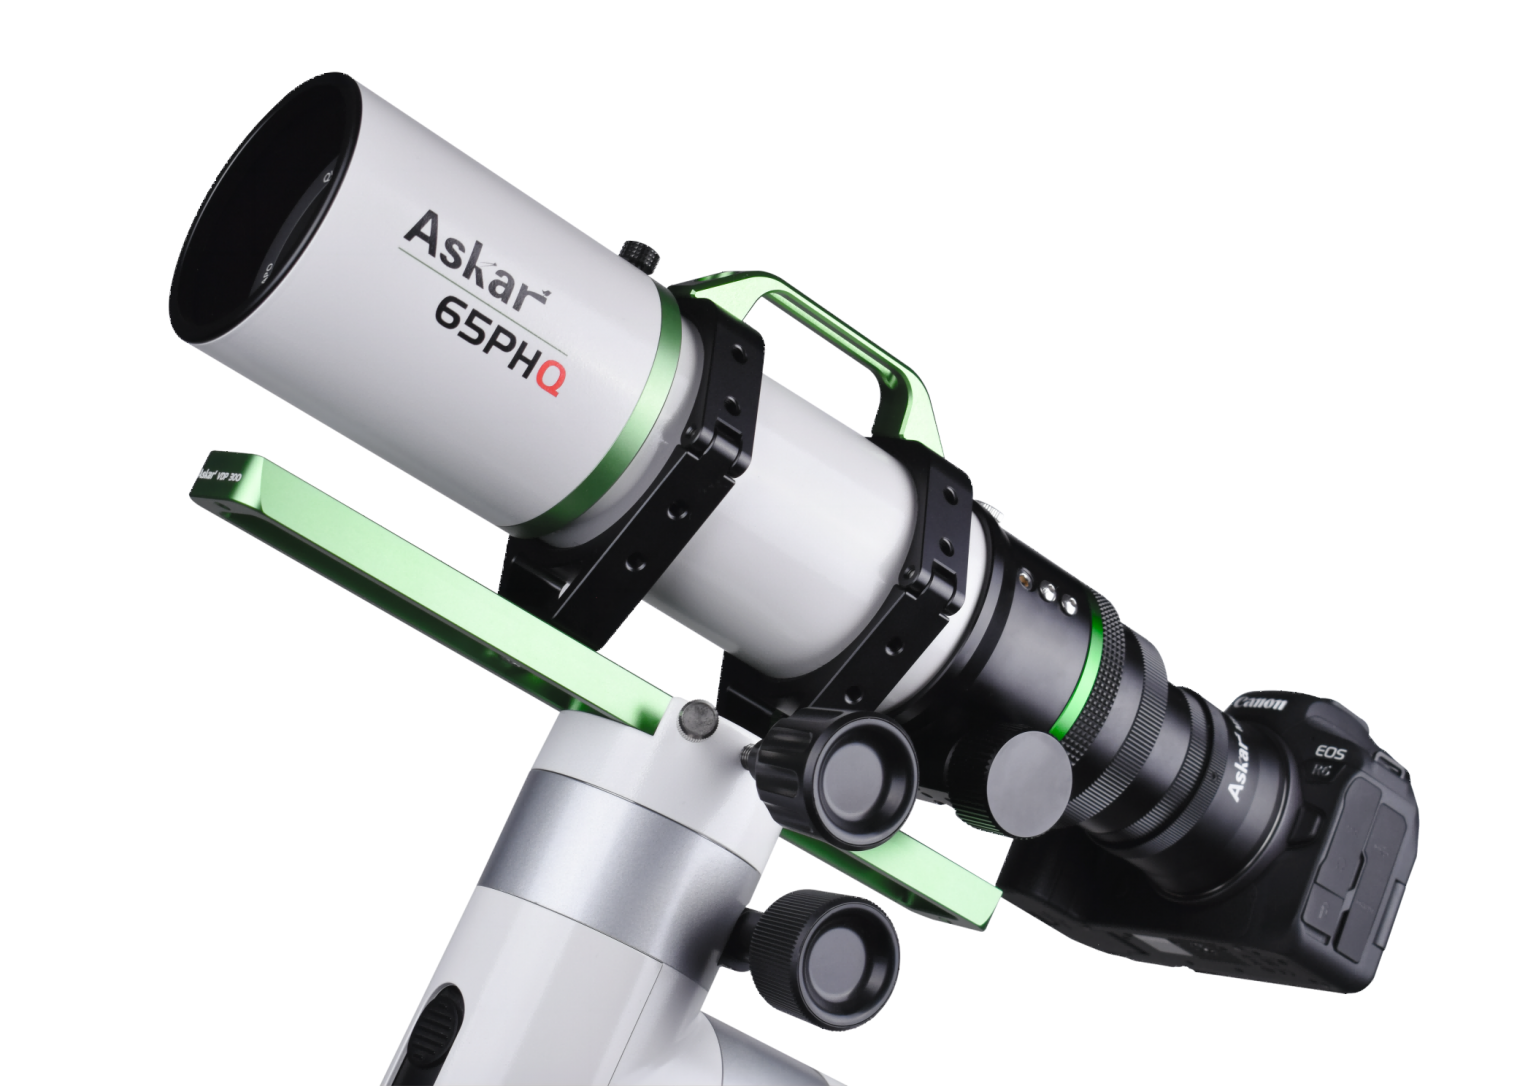 Askar 65PHQ折射式攝星鏡